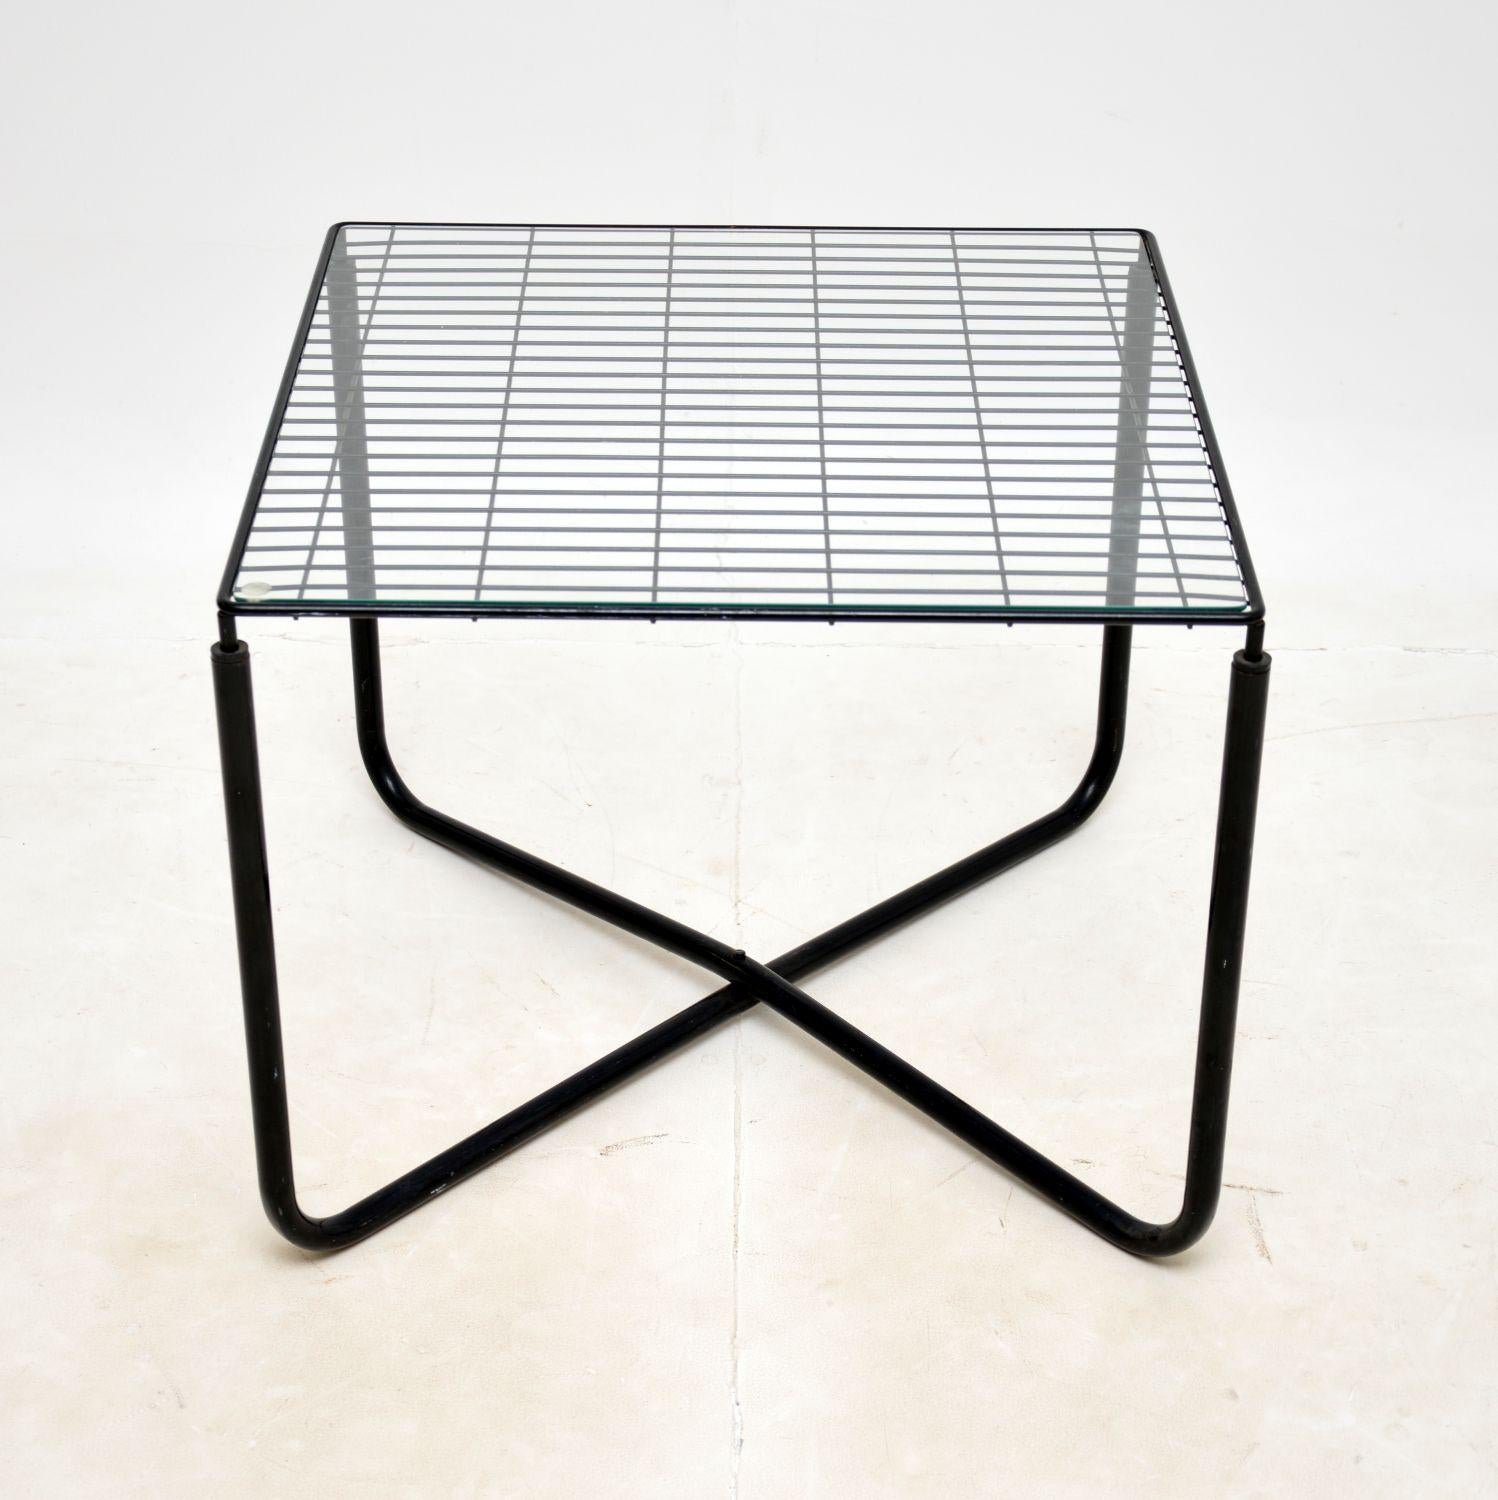 Un diseño elegante e icónico, esta es una mesa de centro Jarpen Vintage de los años 80, de Niels Gammelgaard para Ikea.

La calidad es excelente, tiene un bonito marco de acero ebonizado con una encimera de cristal transparente extraíble.

Su estado